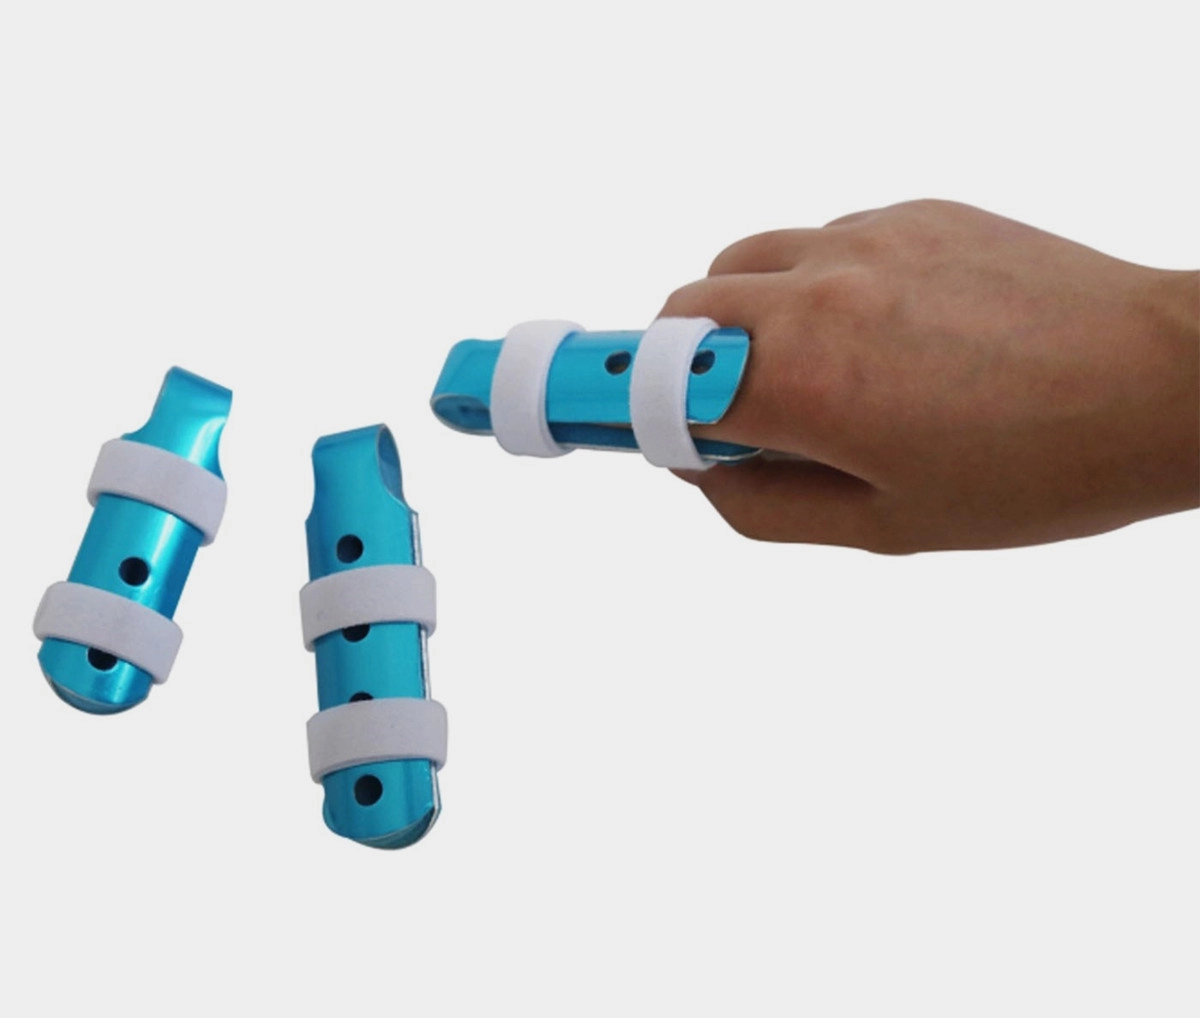 Verstellbare Aluminium-Fingerschienen für Kinderbetten mit oder ohne Riemen zum Schutz oder zur Immobilisierung